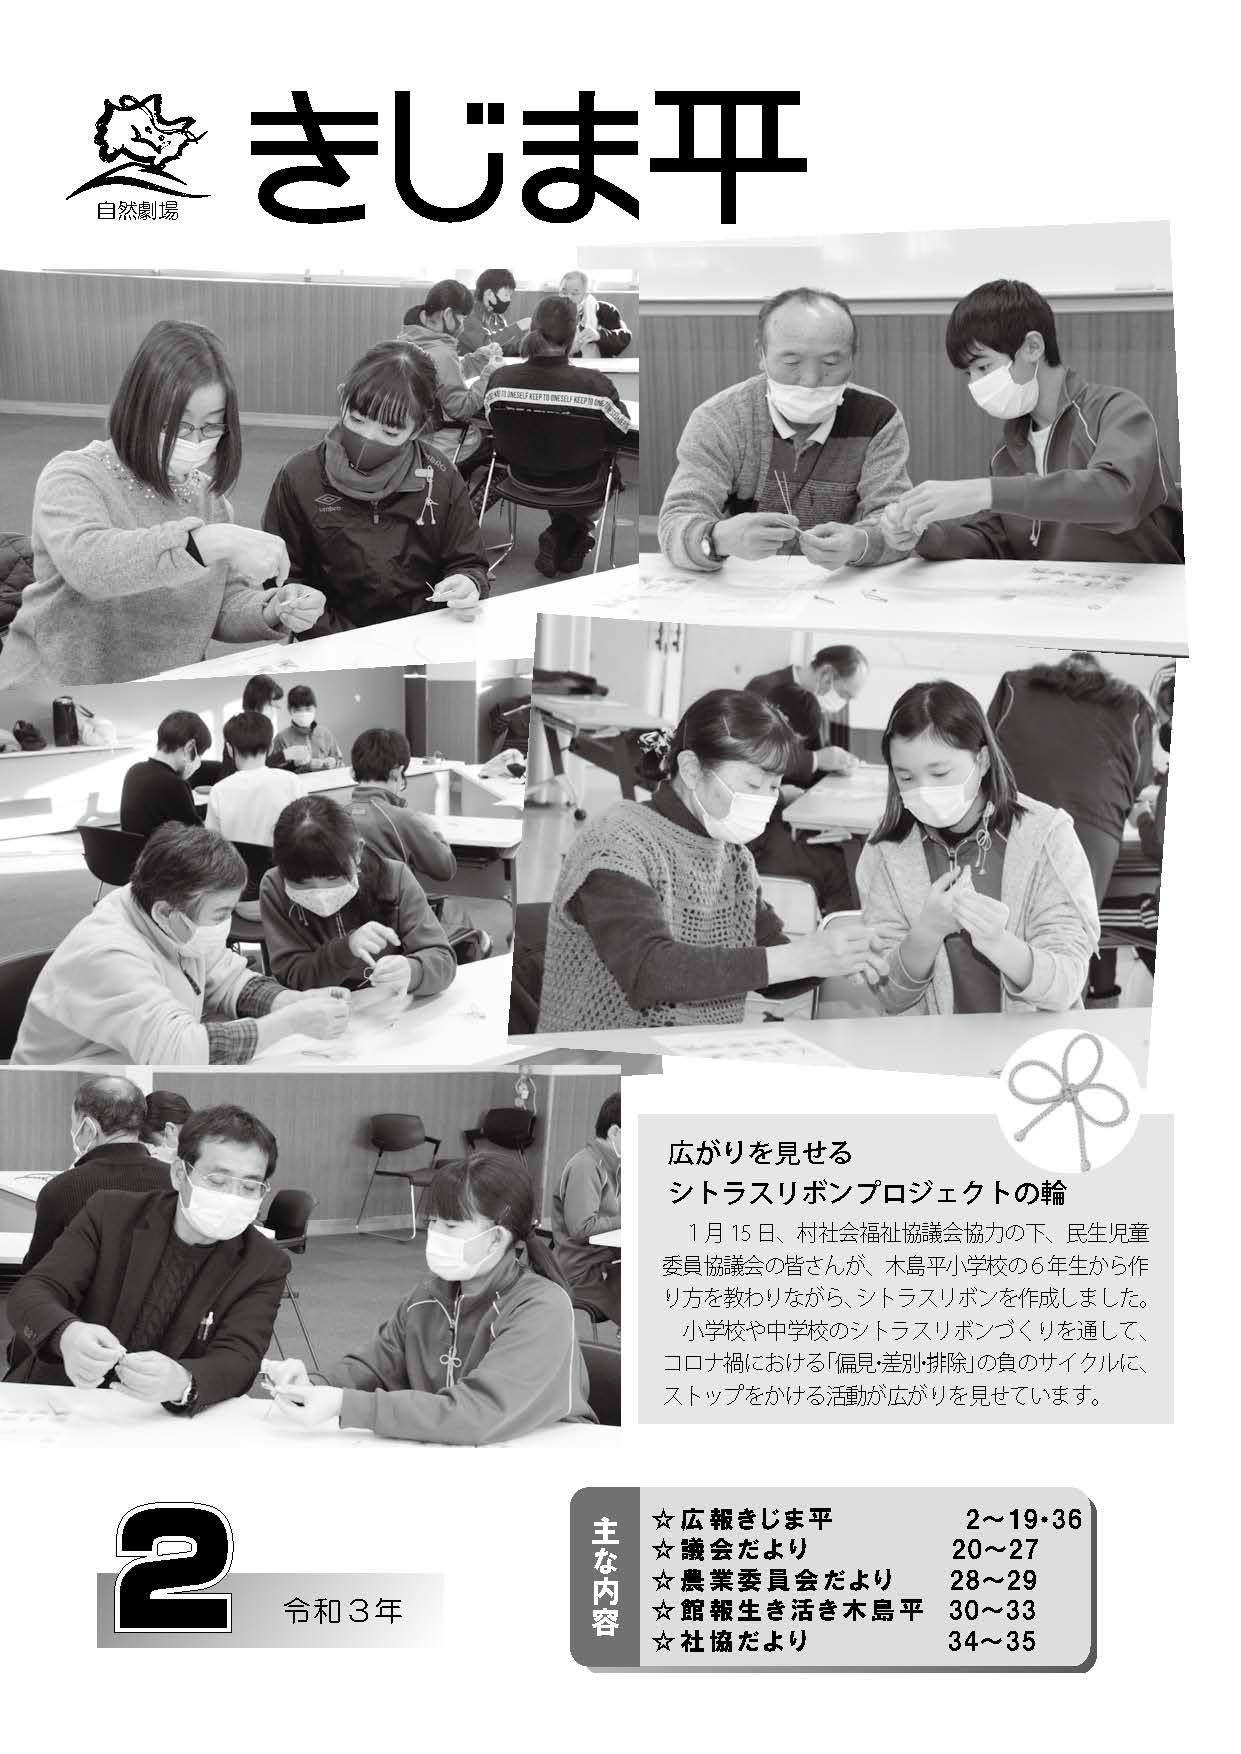 民生児童委員協議会の皆さんが木島平小学校の6年生からシトラスリボンの作り方を教わる様子